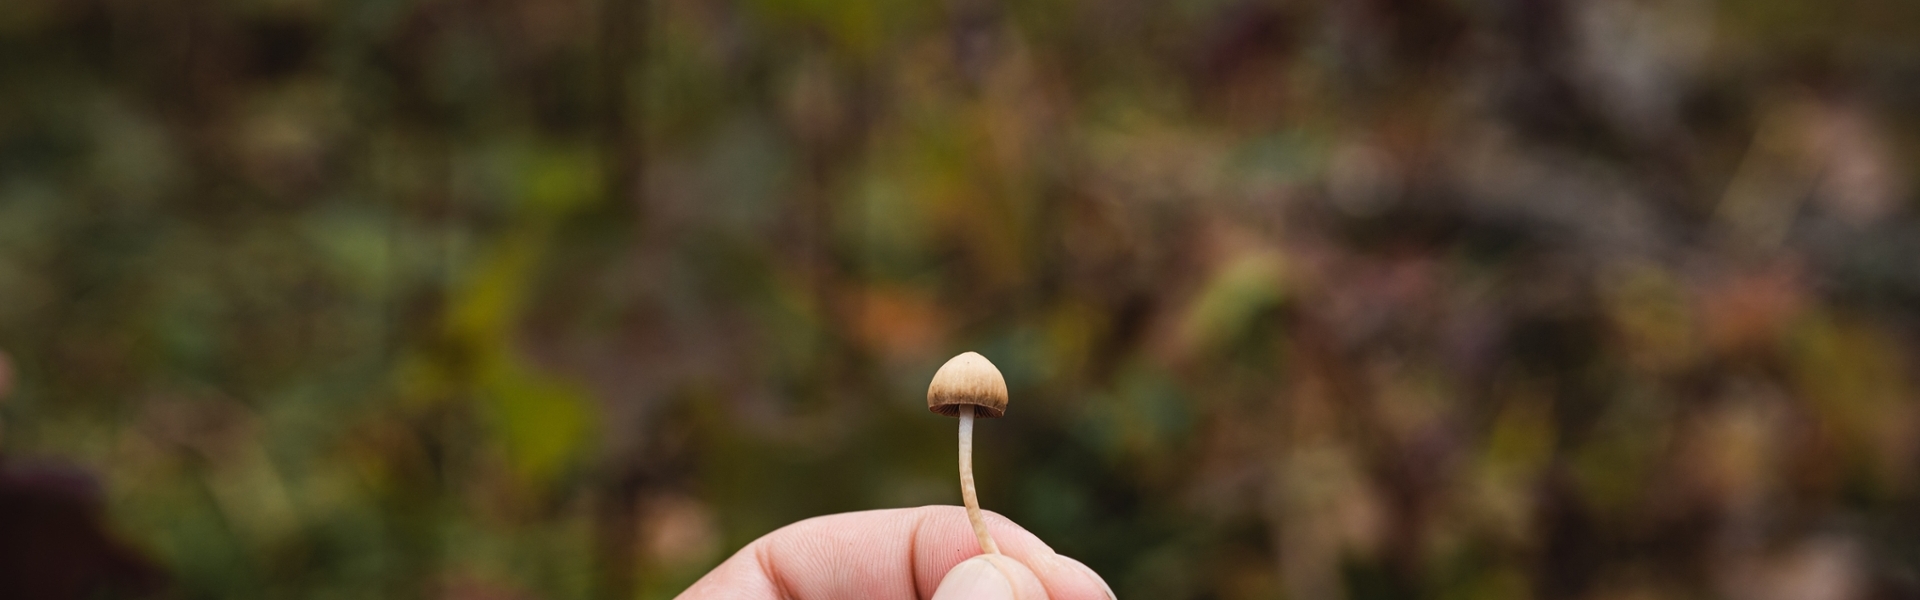 Image of mushroom by Arthur Kornakov on Unsplash